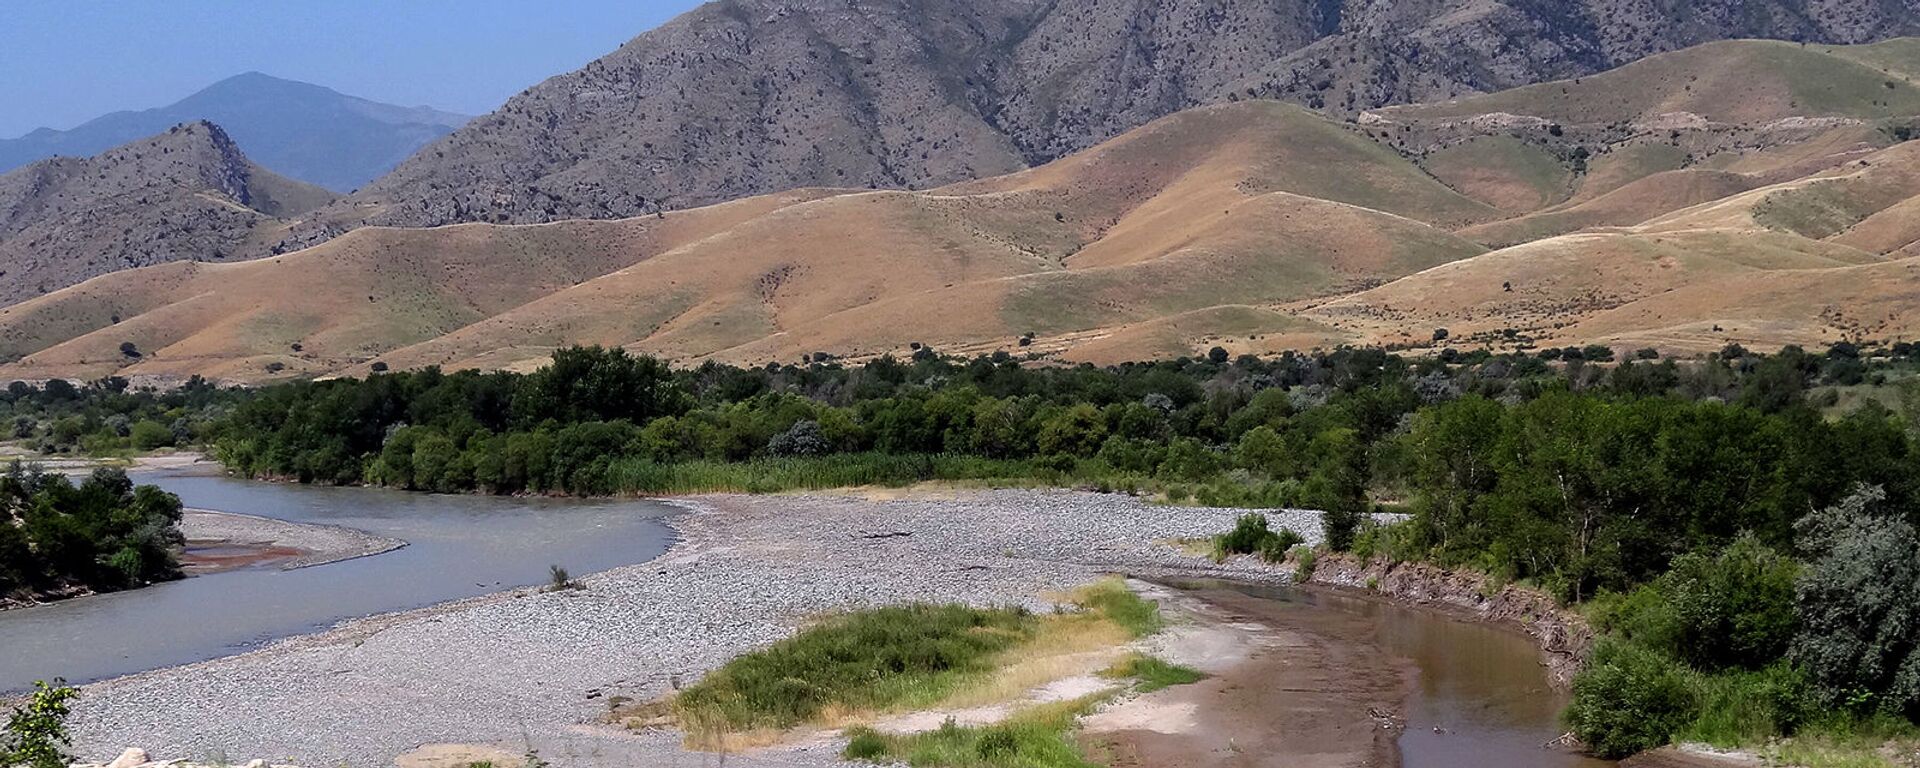 Река Аракс с границами между Карабахом, Ираном и Азербайджаном - Sputnik Армения, 1920, 12.07.2021